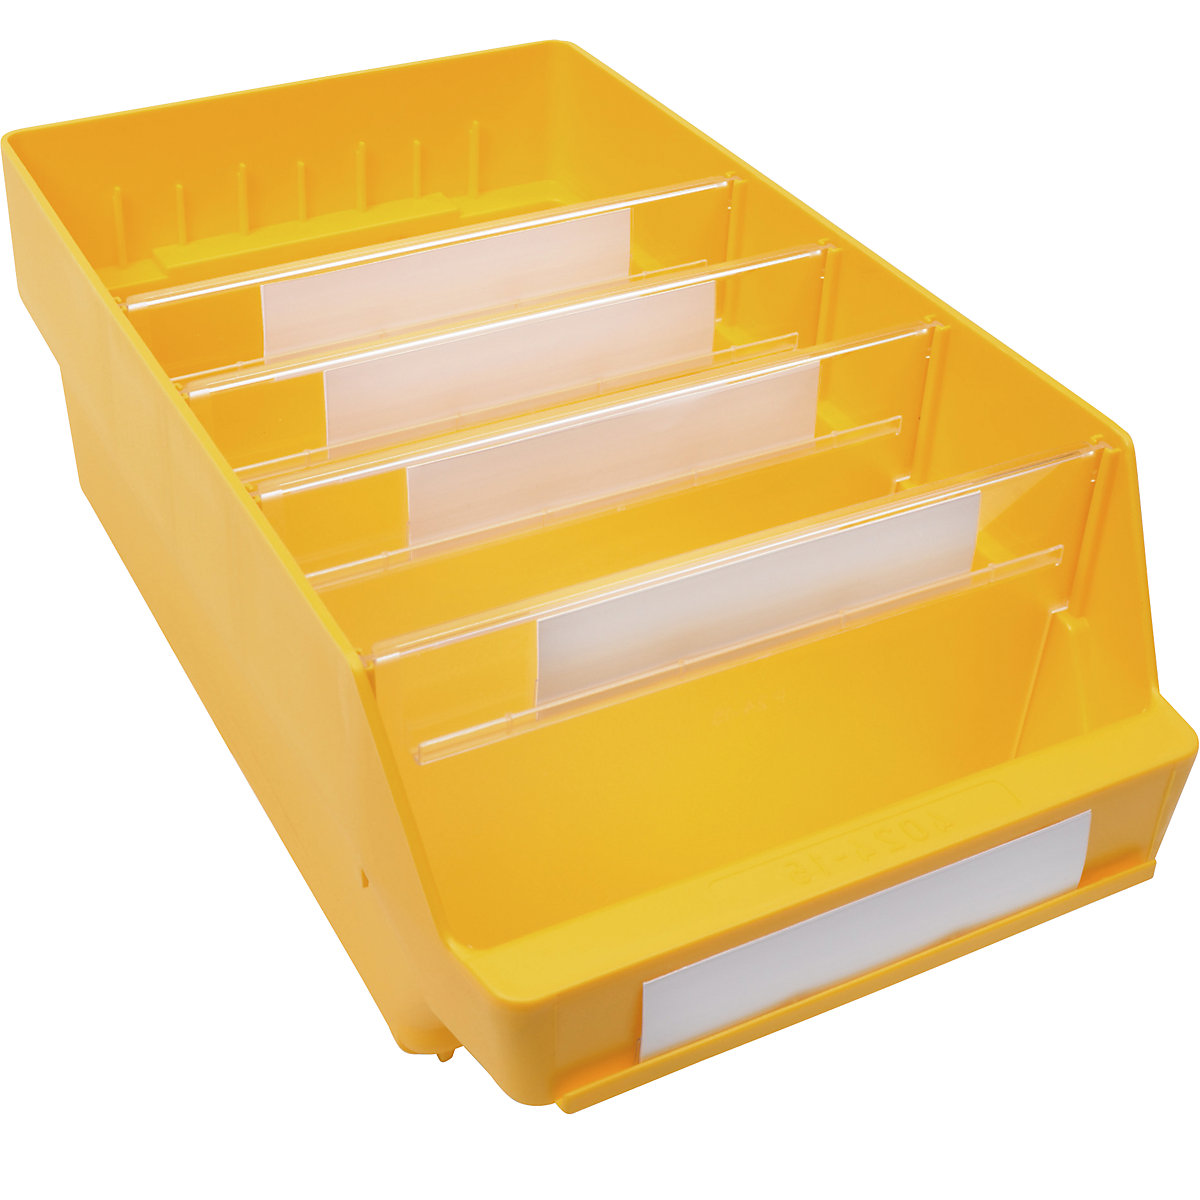 Bac de stockage en polypropylène résistant aux chocs – STEMO, coloris jaune, L x l x h 400 x 240 x 150 mm, lot de 10-8